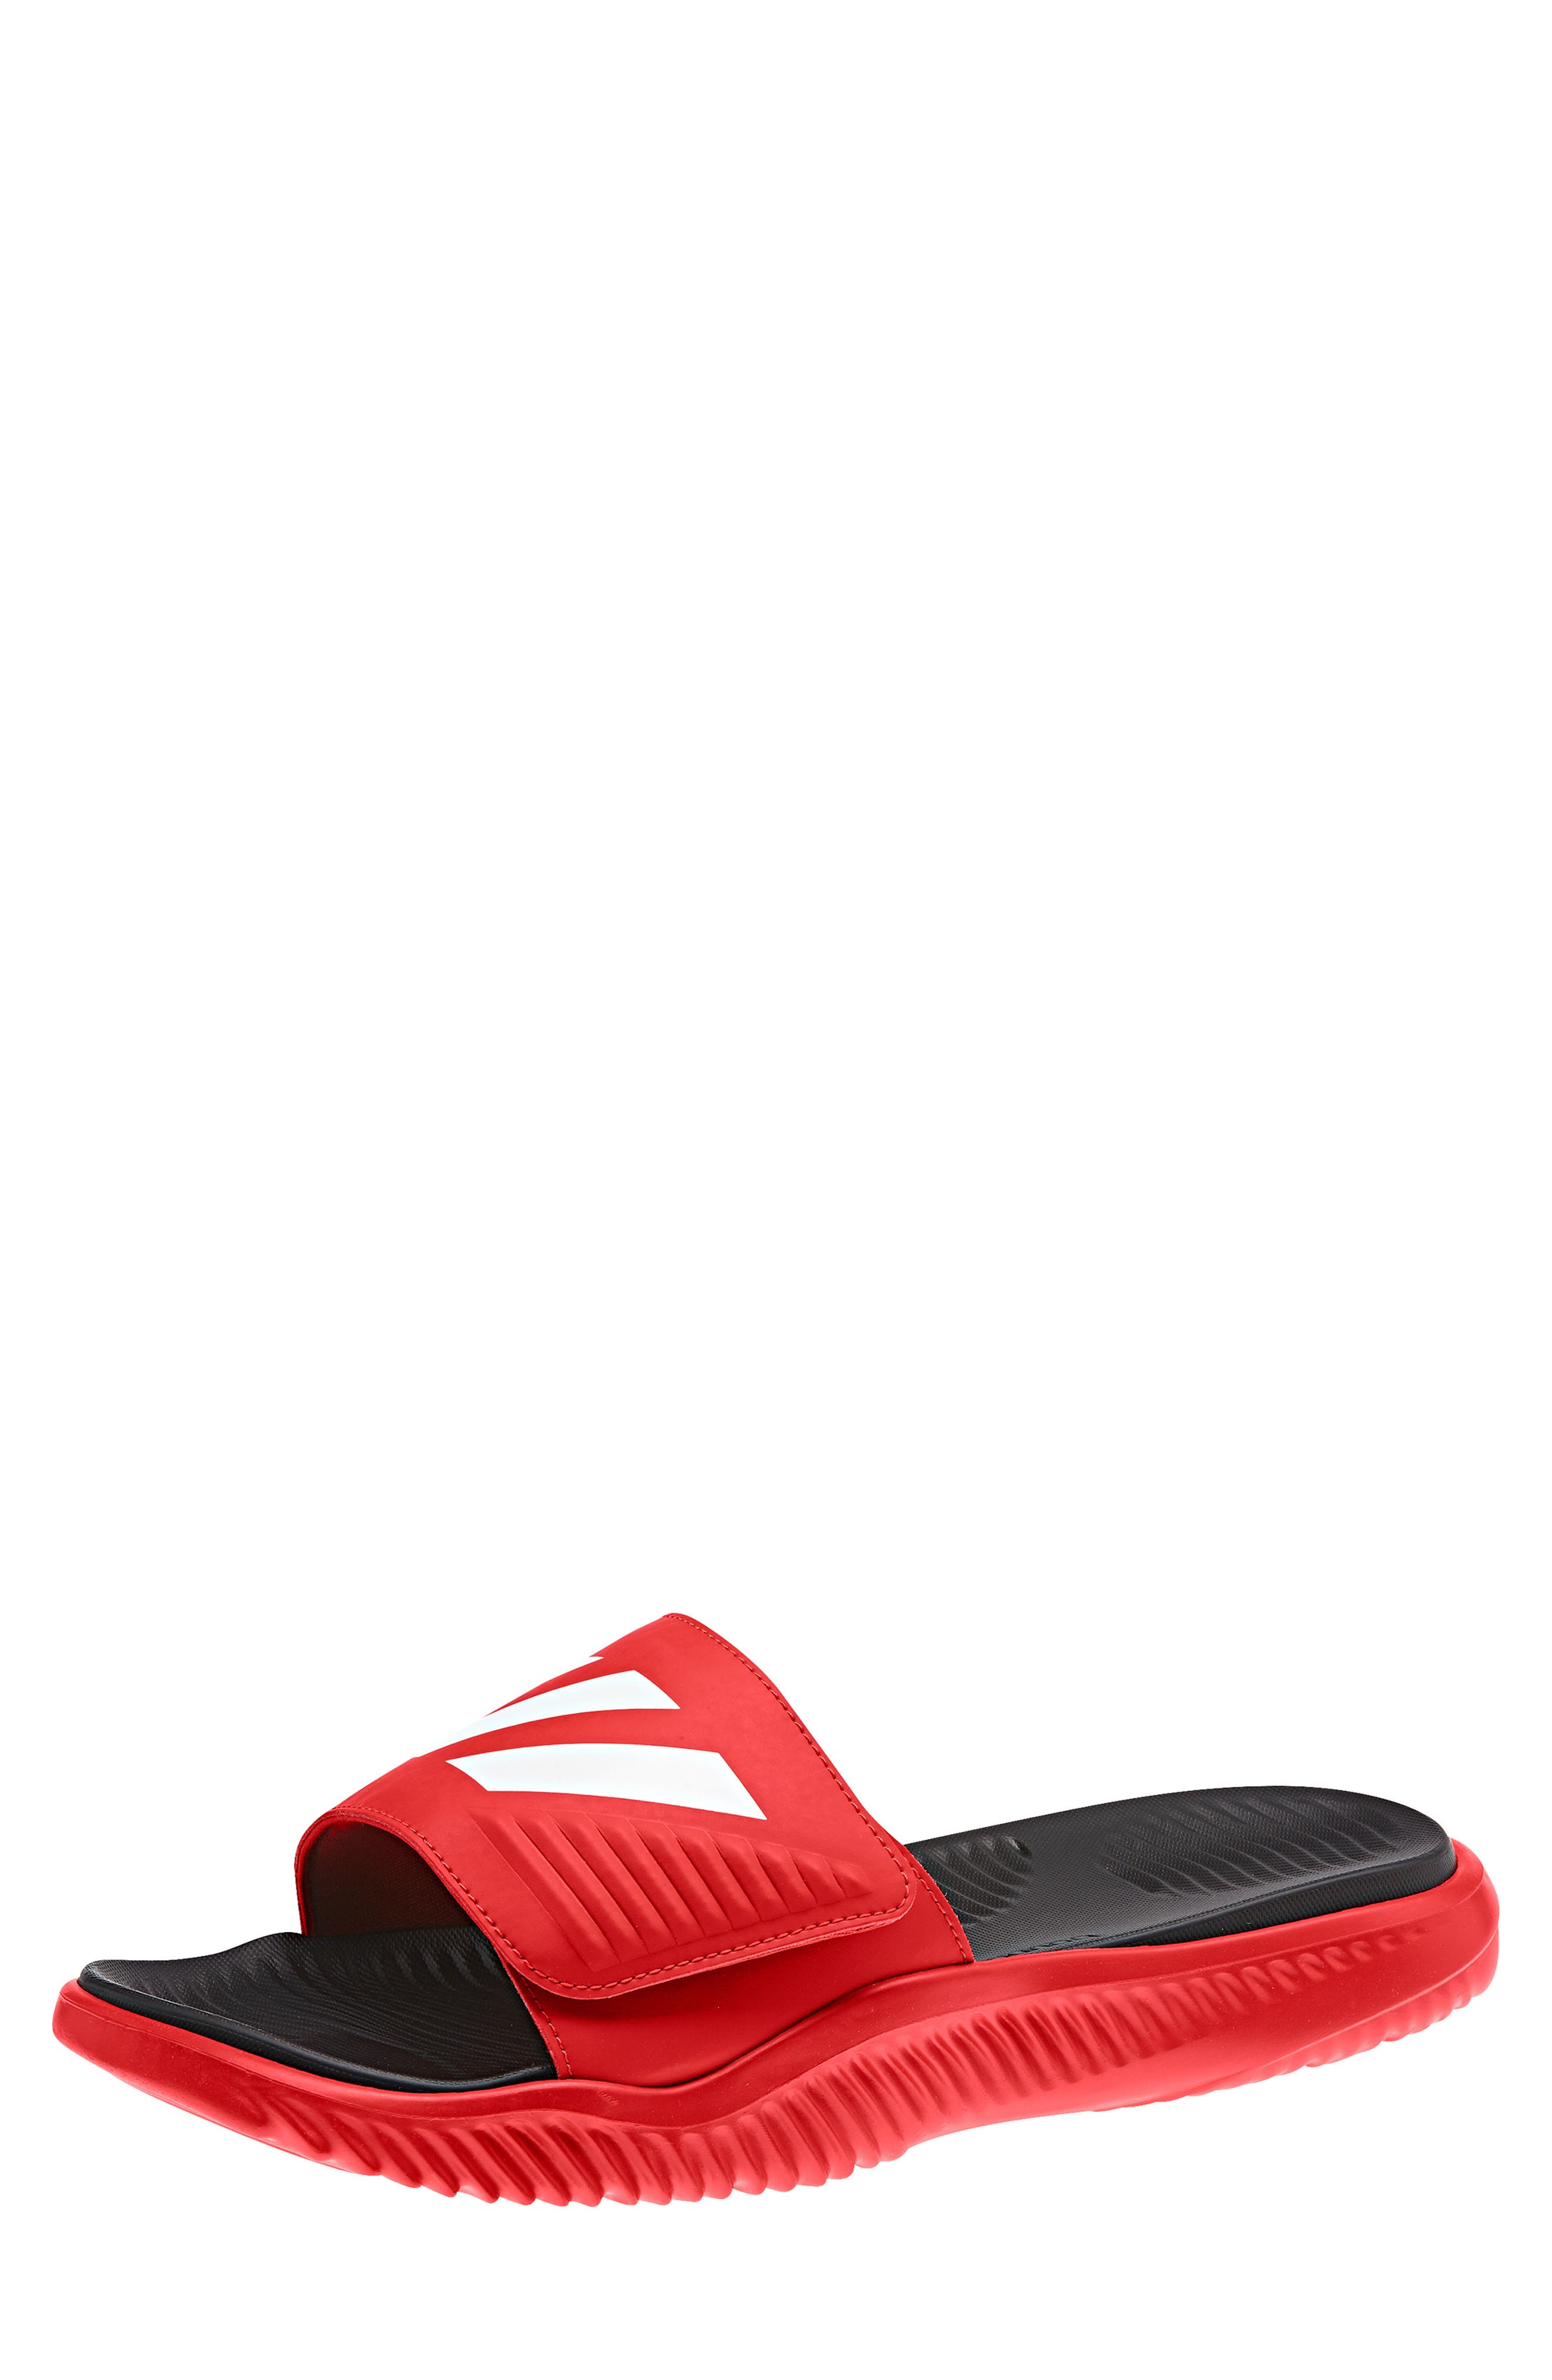 alphabounce slide sandal